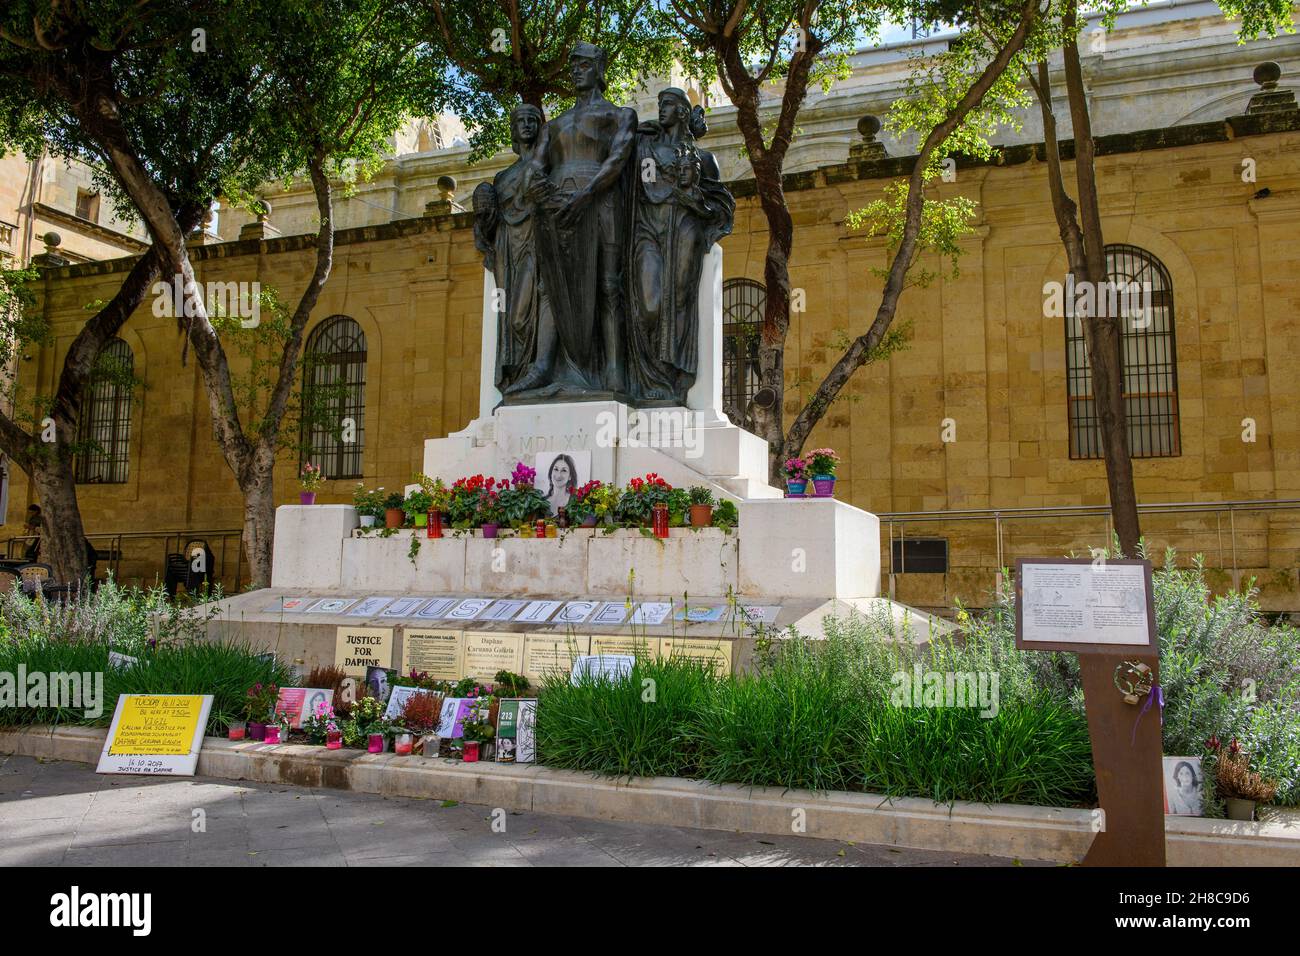 Gedenkstätte für ermordete Journalistin Daphne Caruana Galizia am Denkmal für Große Belagerung von Malta,Valletta, Malta, Europa Stock Photo